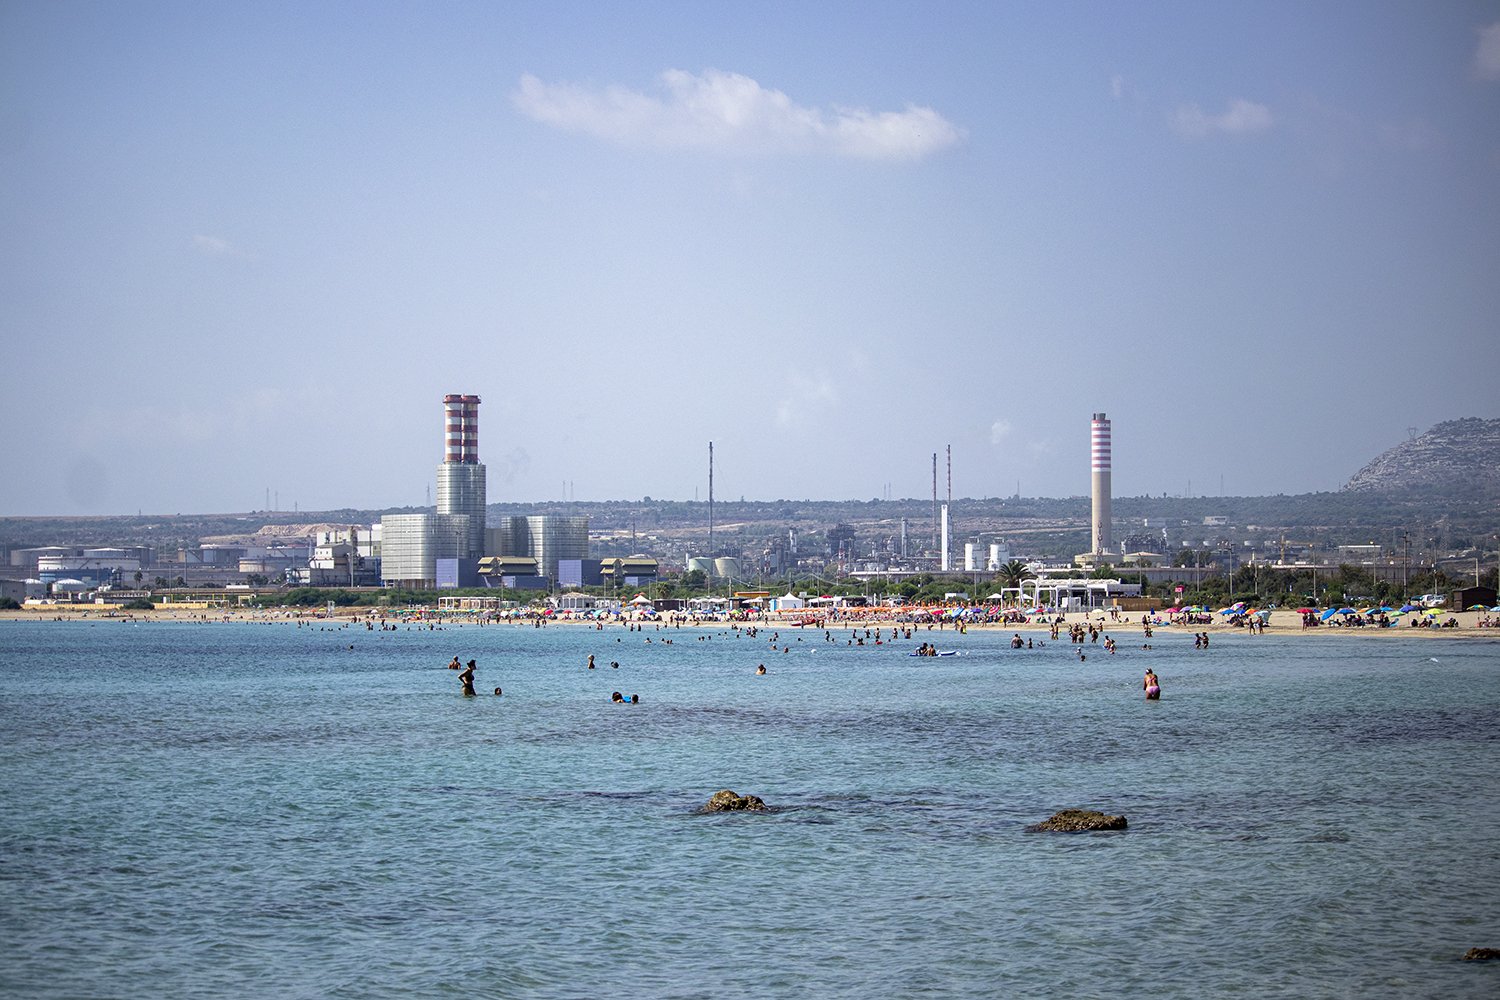  Spiaggia di Marina di Priolo, un litorale lungo circa 3 km, in parte libera ed in parte occupata da stabilimenti turistici. Al centro di continue diatribe e polemiche sulla effettiva balneabilità, a pochi passi l’uno dall’altro si alternano cartelli